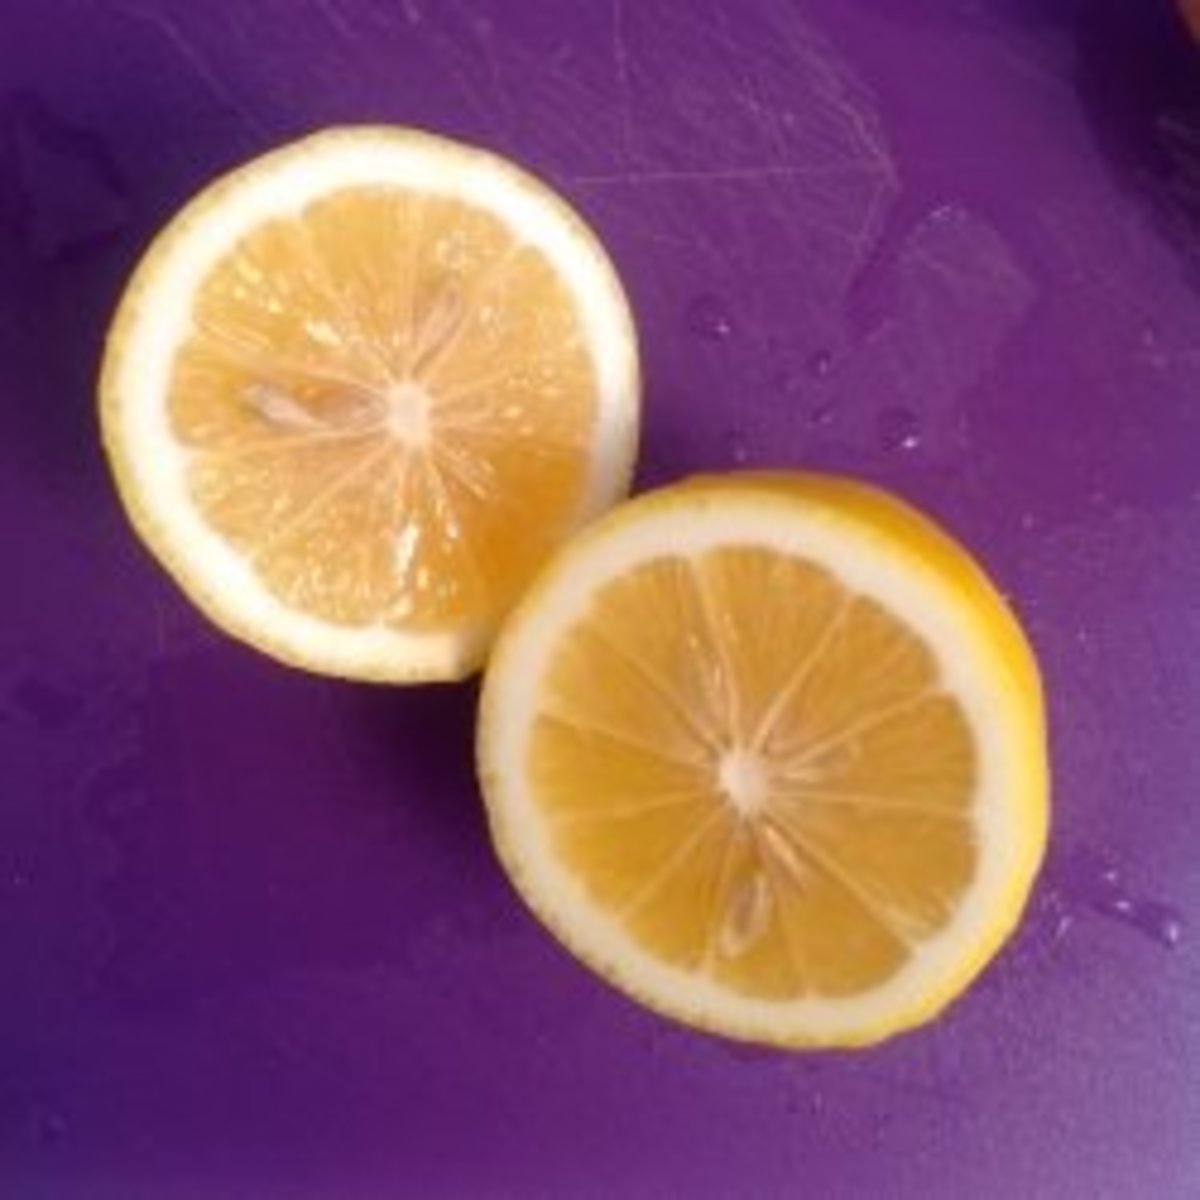 make-lemonade